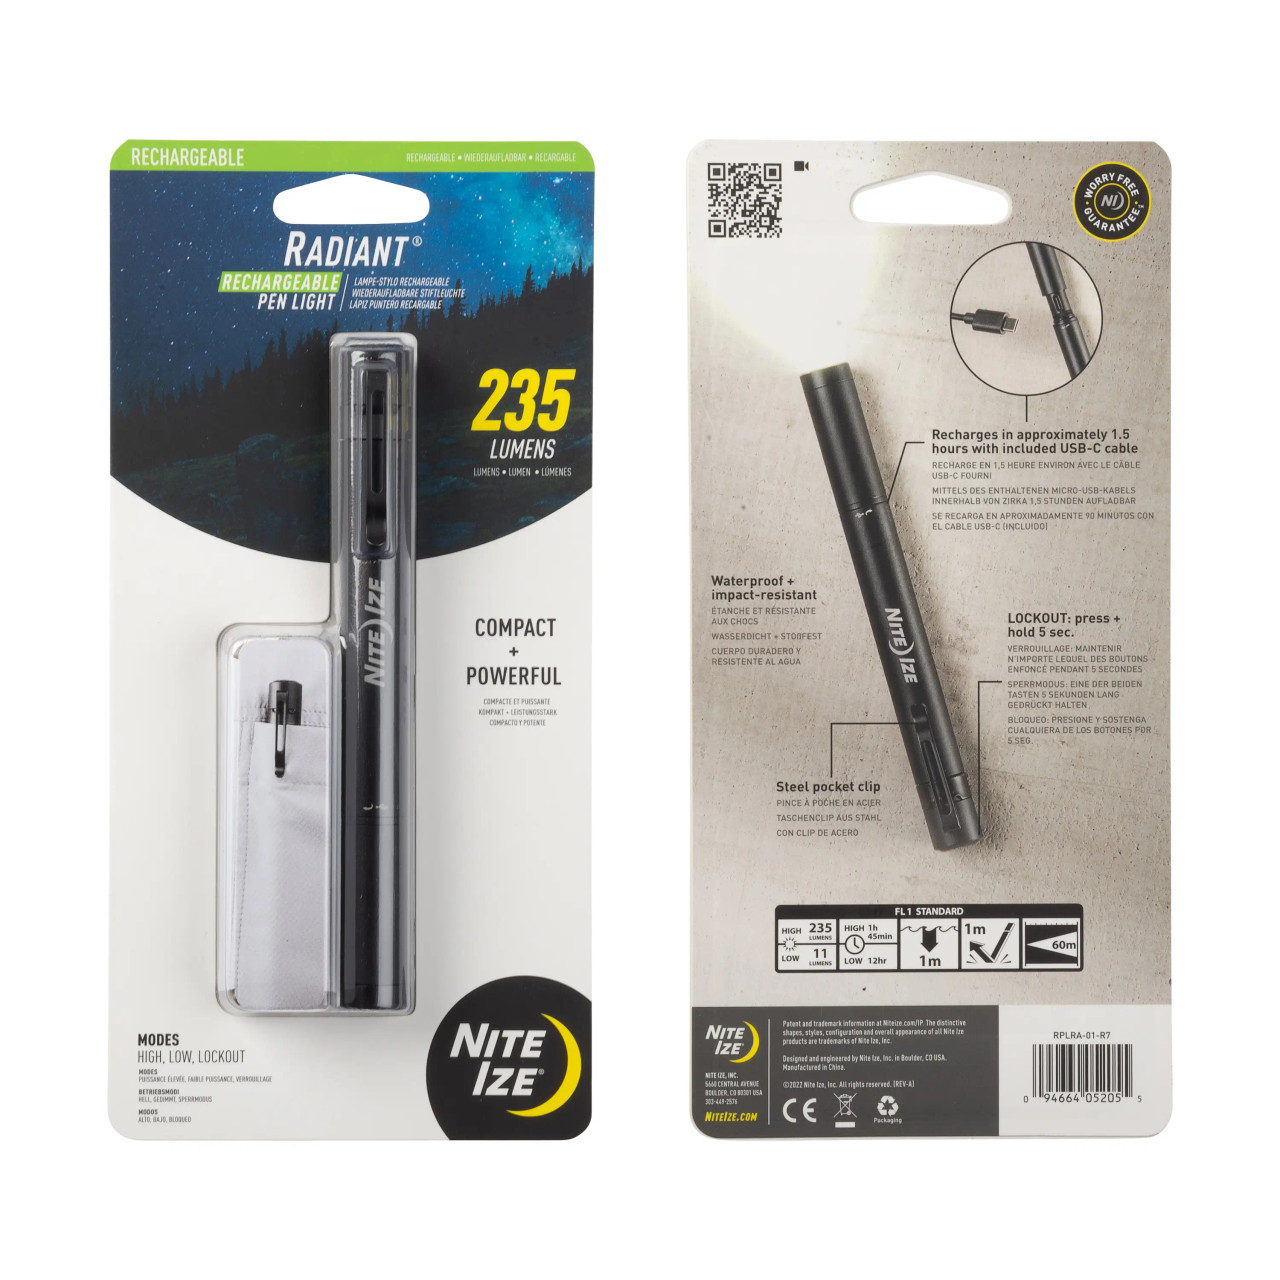 Nite Ize Radiant Rechargeable Pen Light RPLRA-01-R7